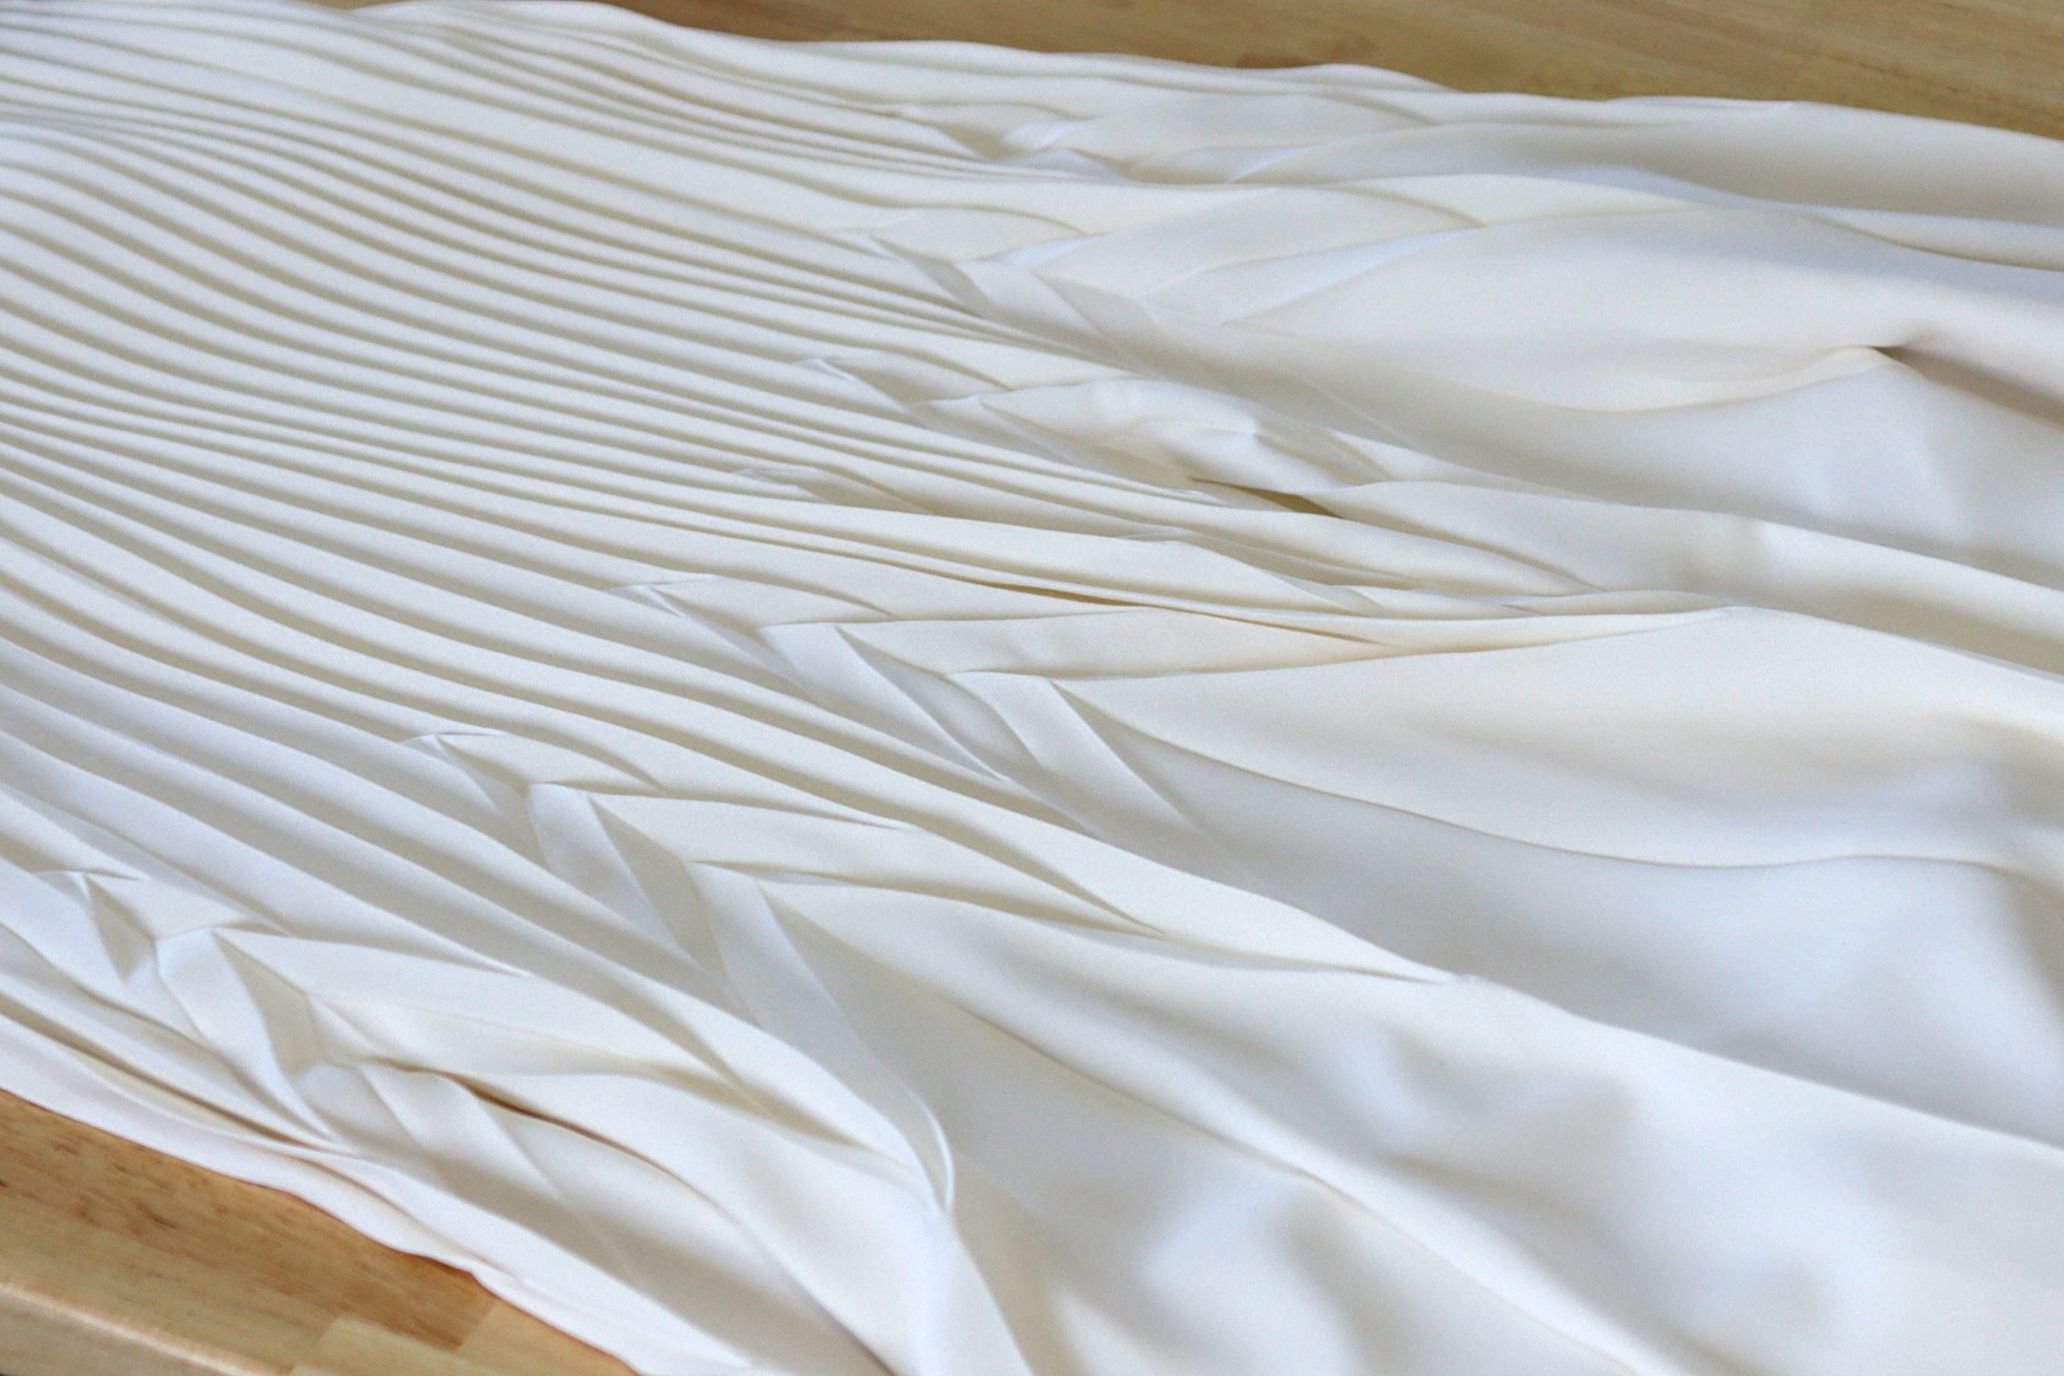 ユナイテッドアローズの発注で考案したプリーツスカートの折り設計。縦プリーツの途中にジグザグを入れ、平行な線を屈折させることで広がる裾に（「スティーブン・アラン」2021SS）
©corsoyard